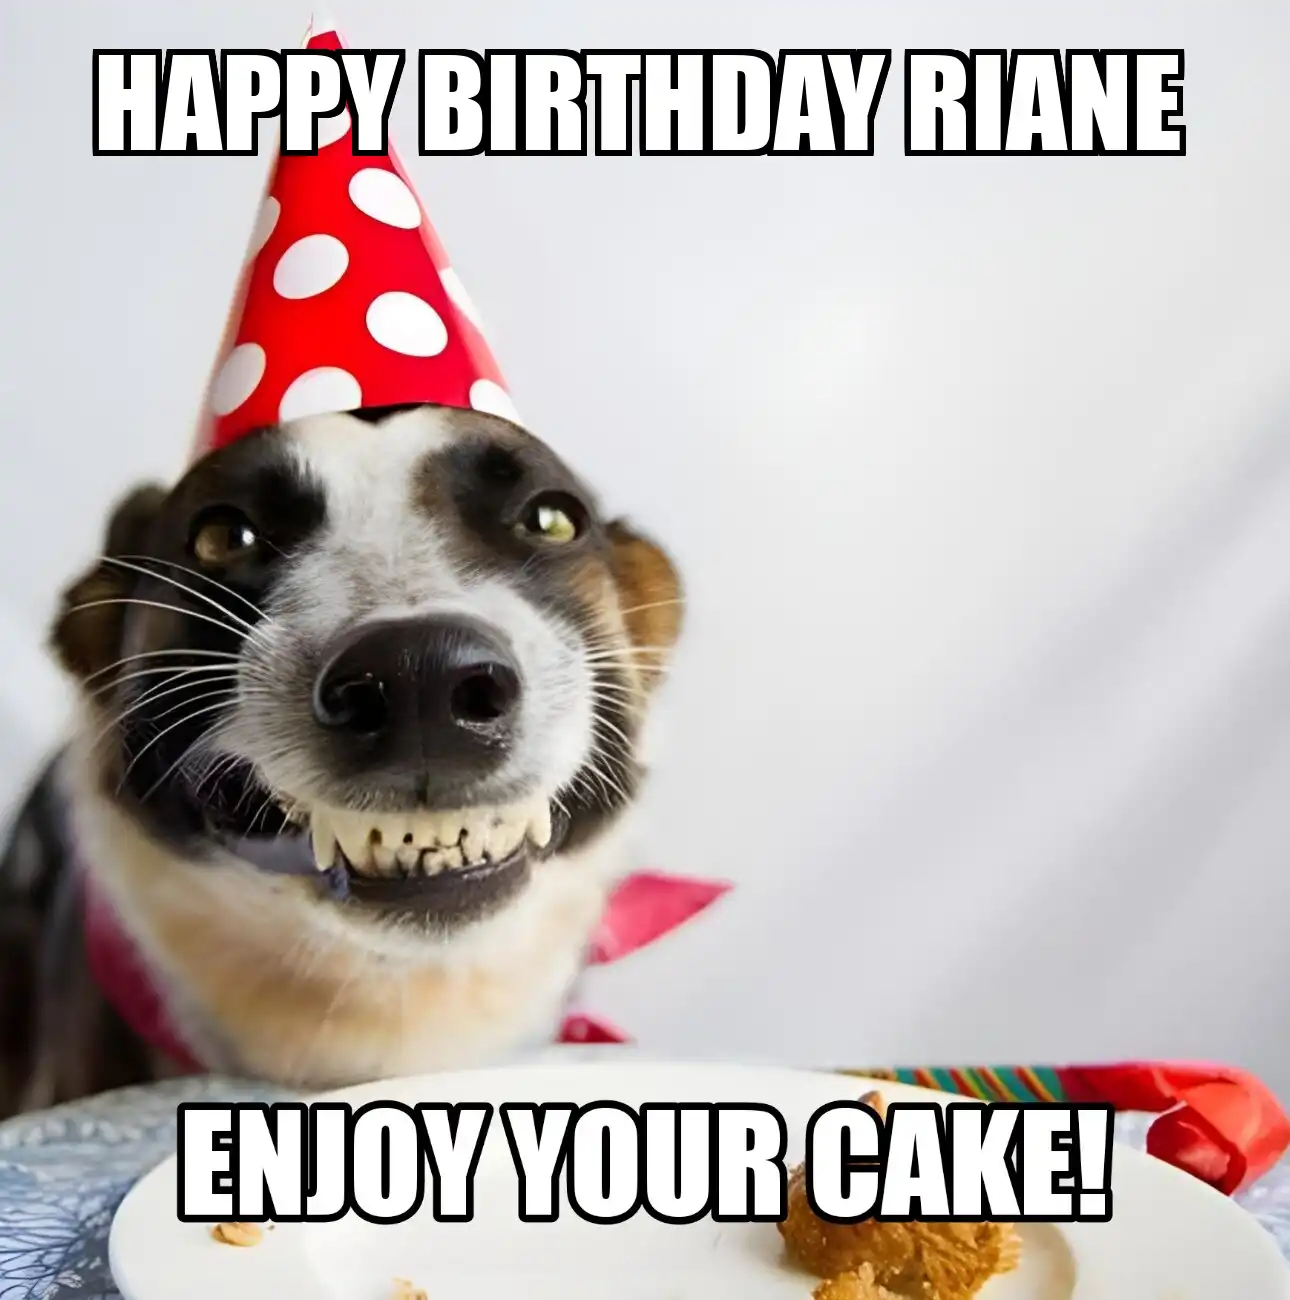 Happy Birthday Riane Enjoy Your Cake Dog Meme